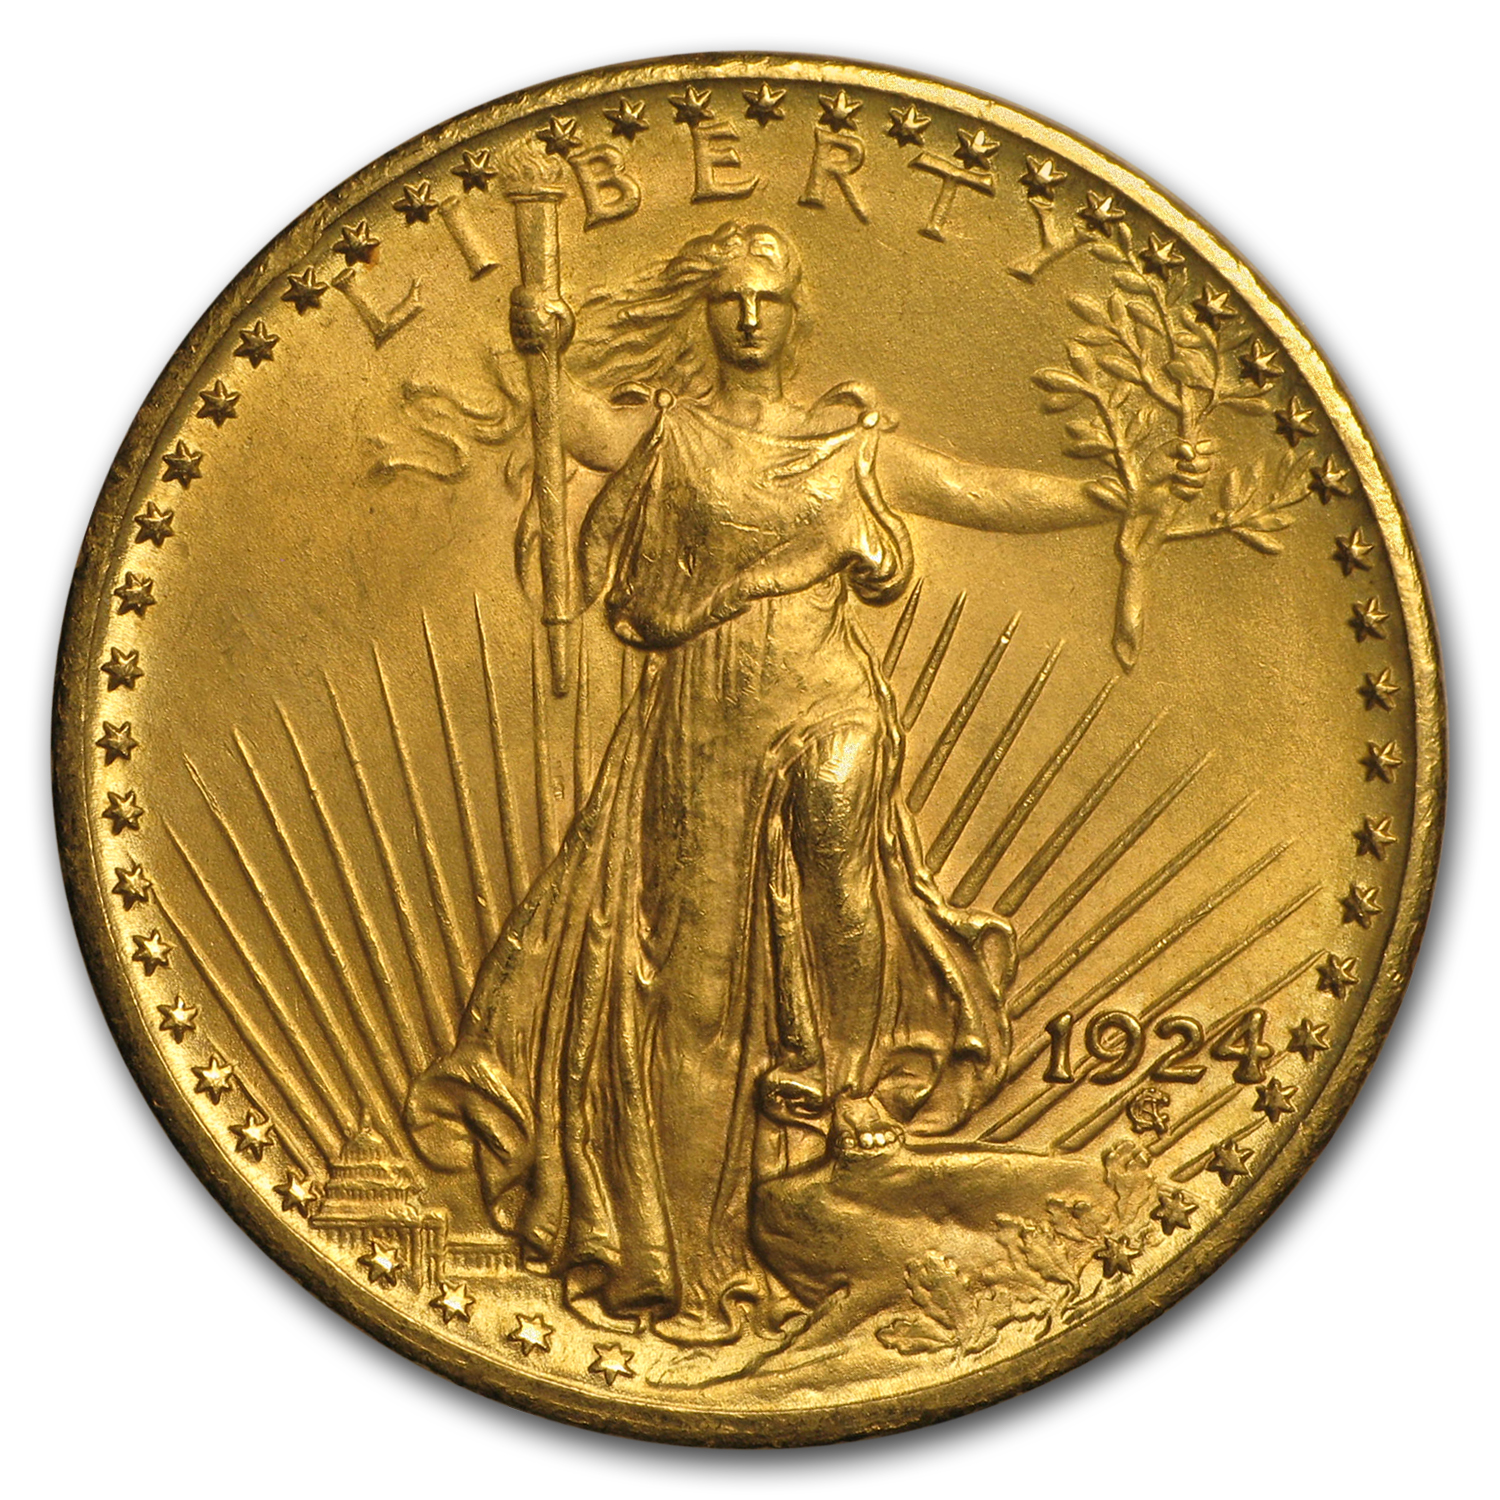 Buy 1924 $20 Saint-Gaudens Gold Double Eagle AU - Click Image to Close